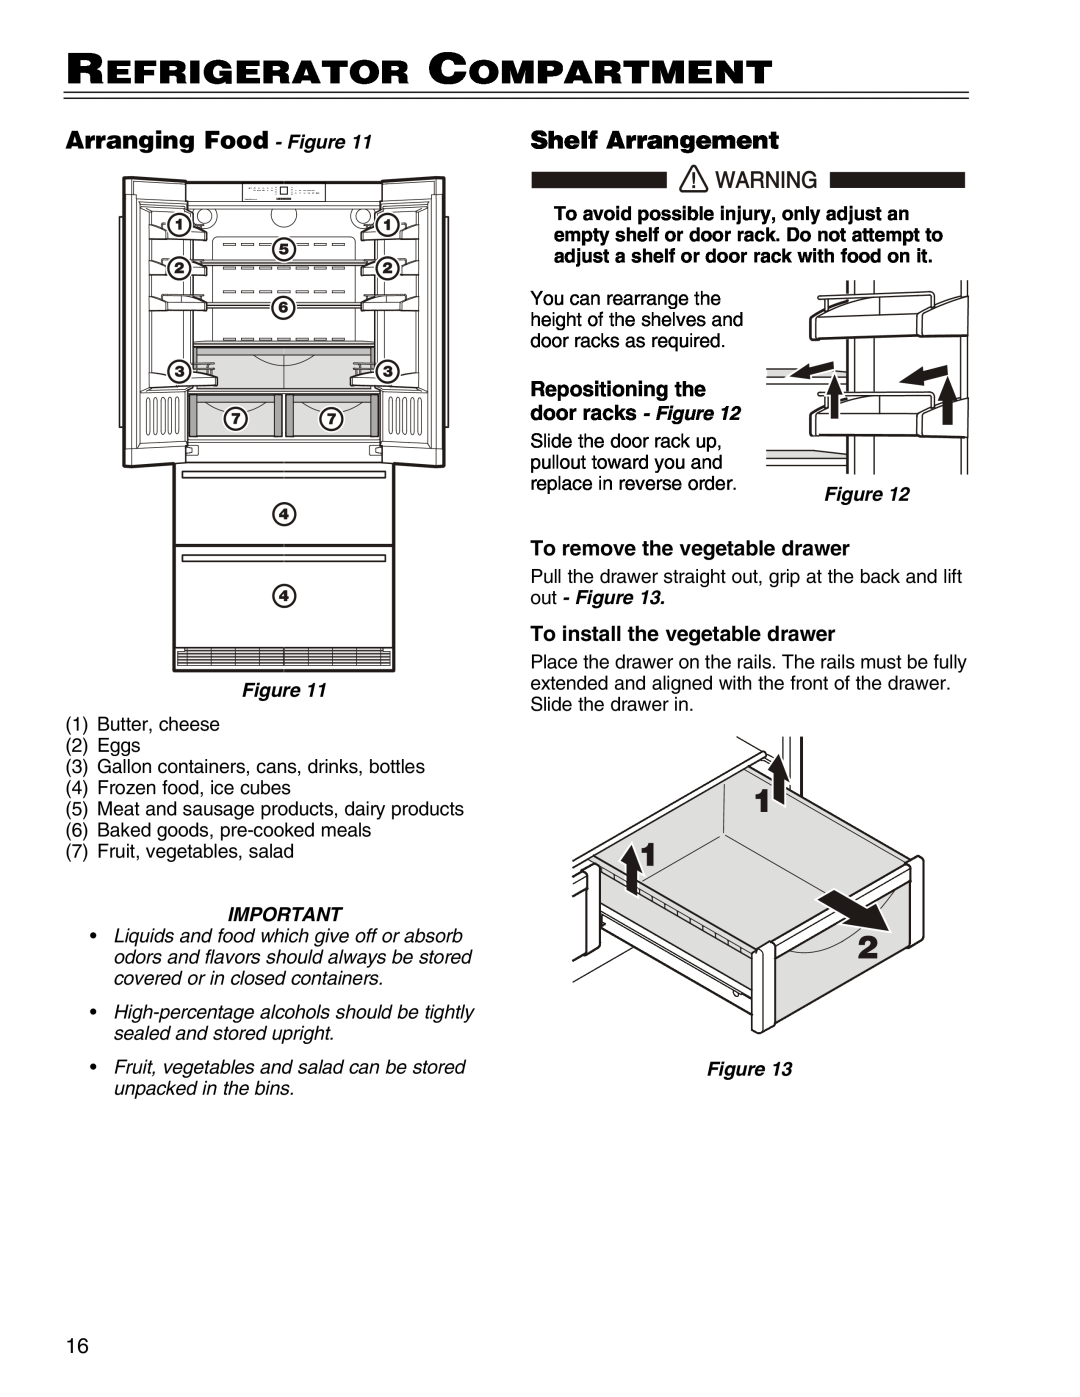 Liebherr HCS Refrigerator Compartment, Arranging Food - Figure, Shelf Arrangement, Repositioning the door racks - Figure 